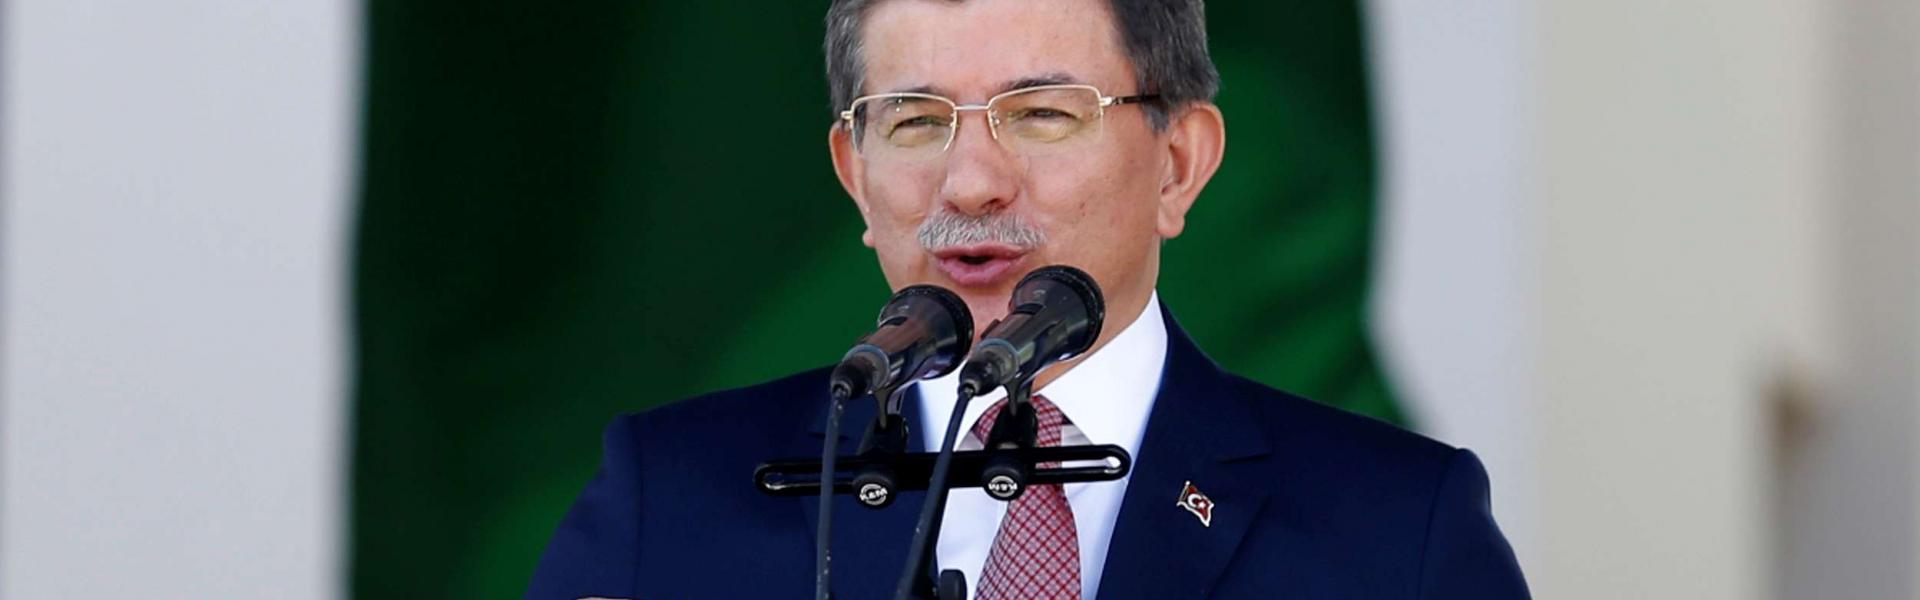 Former PM Davutoğlu hits back at pro-AKP media